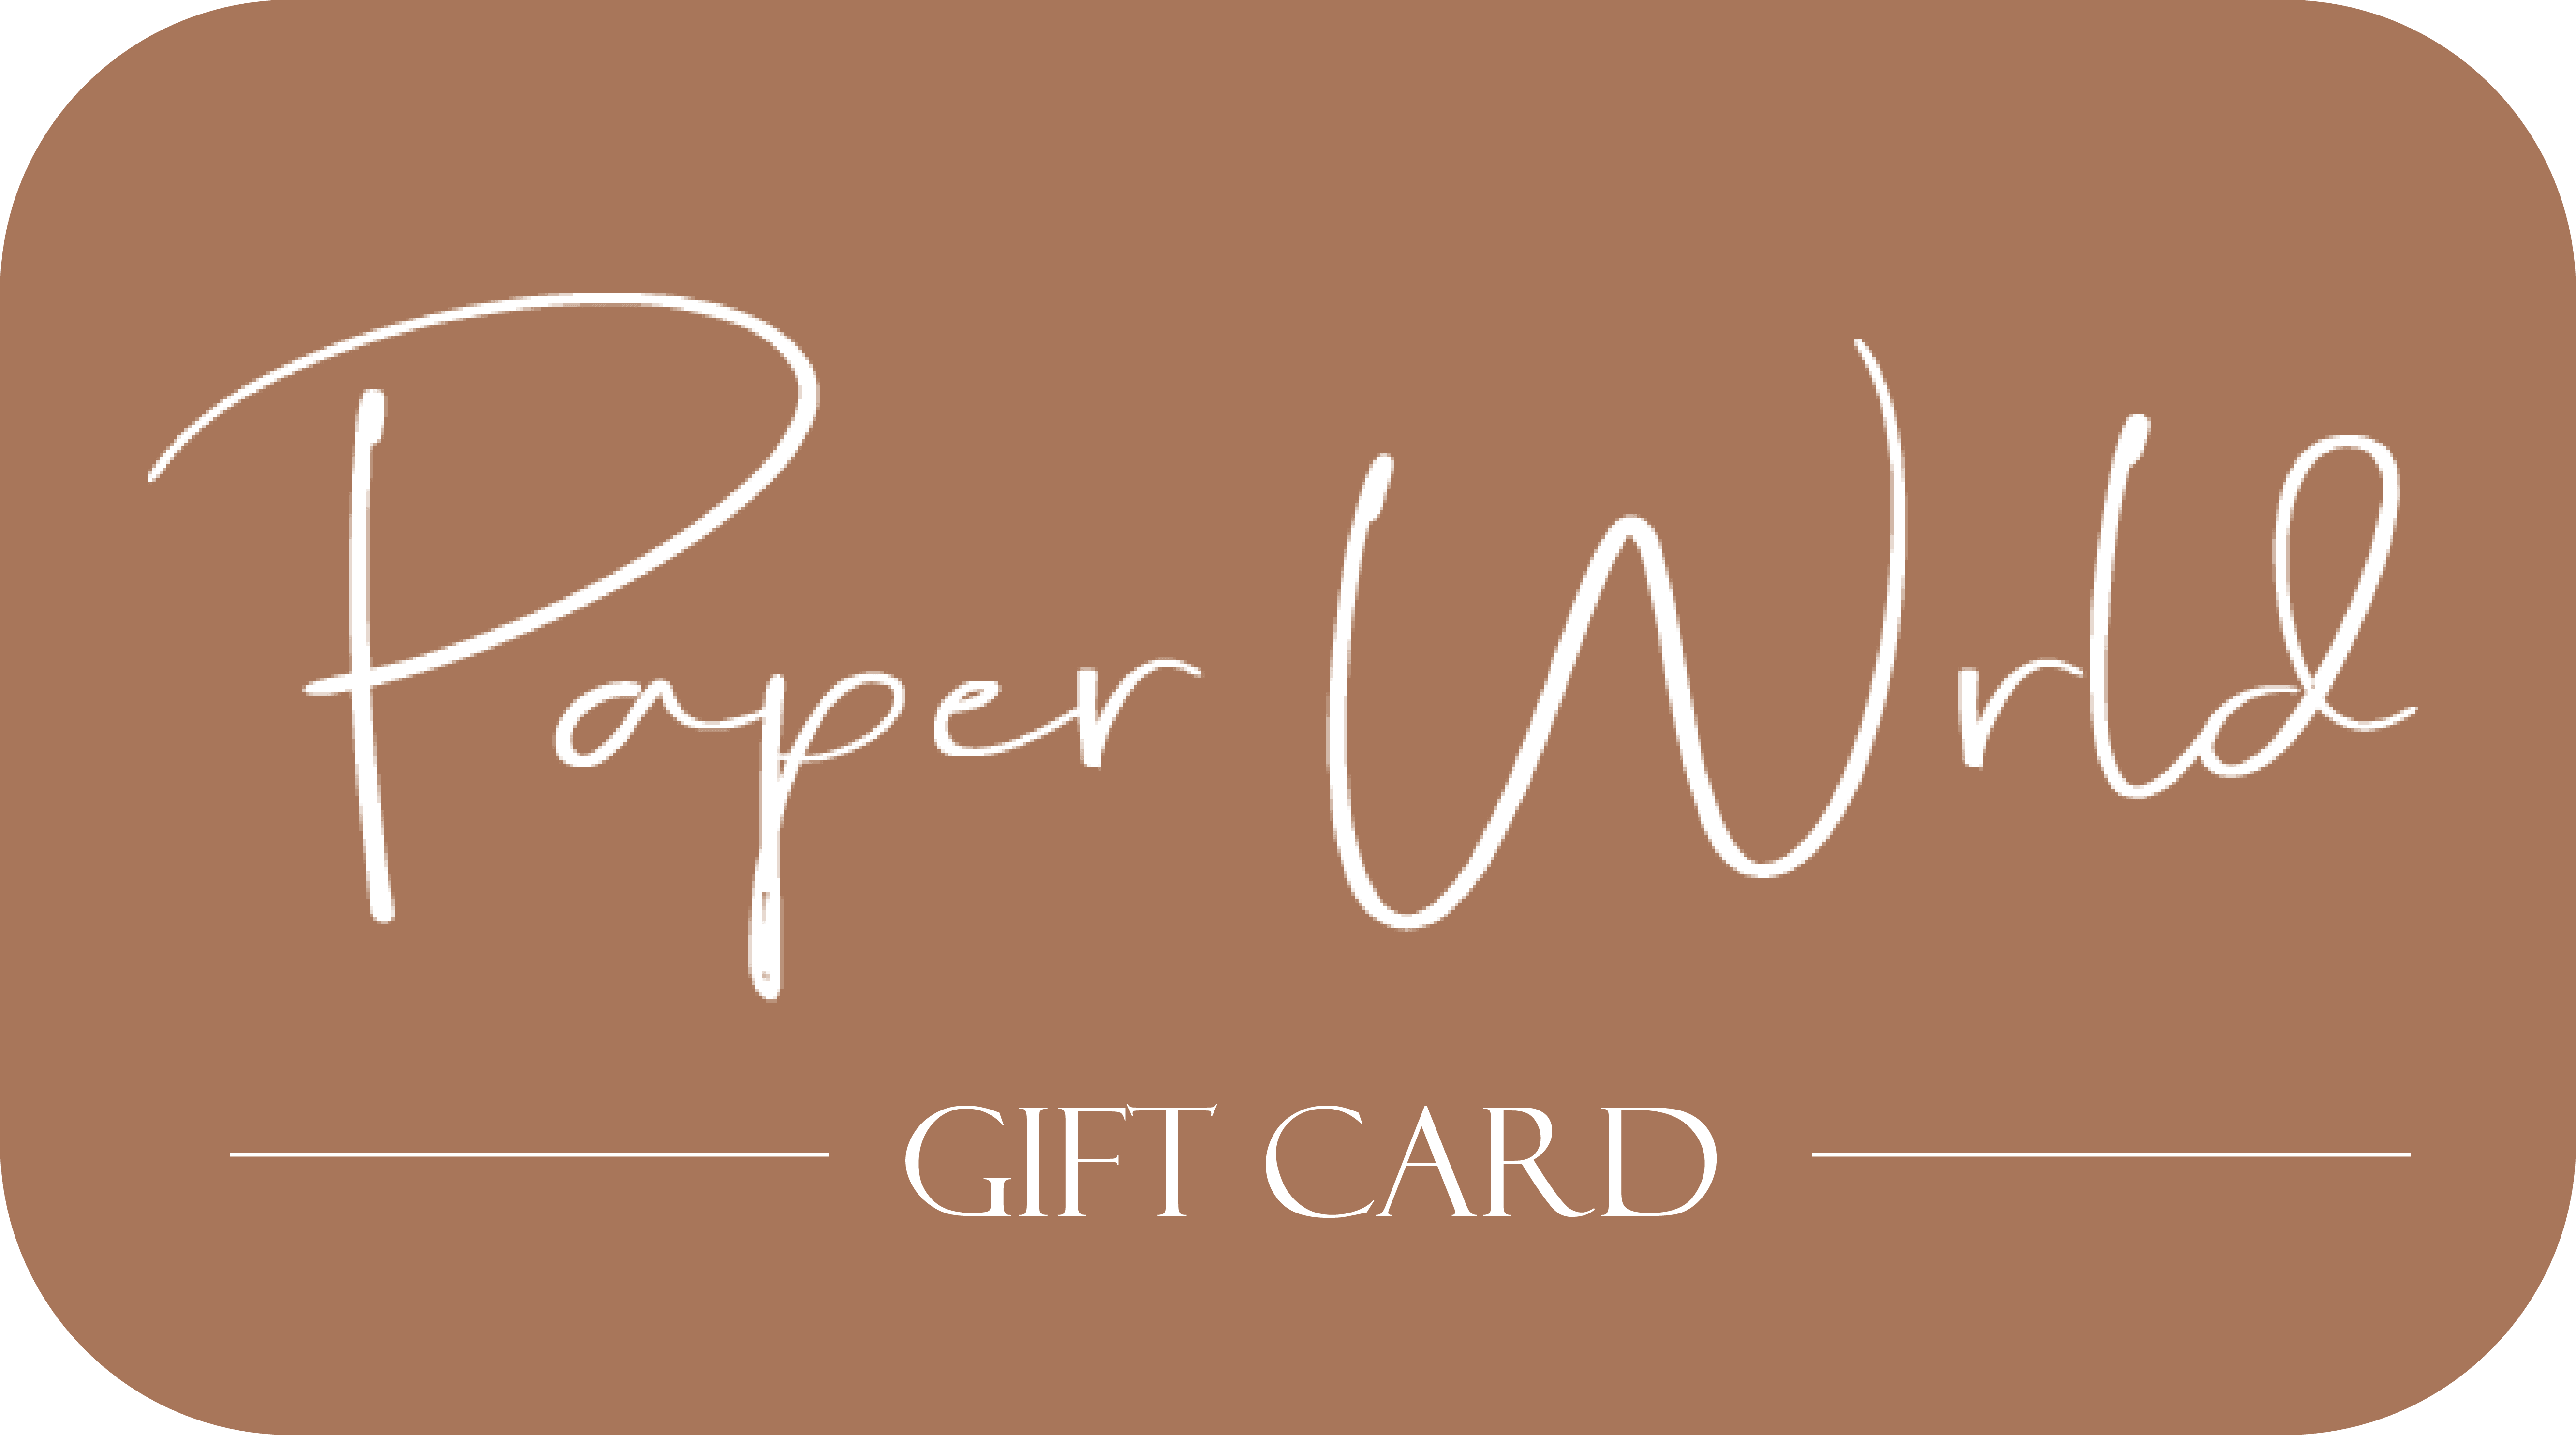 Gift Card - €50.00 - PaperWrld